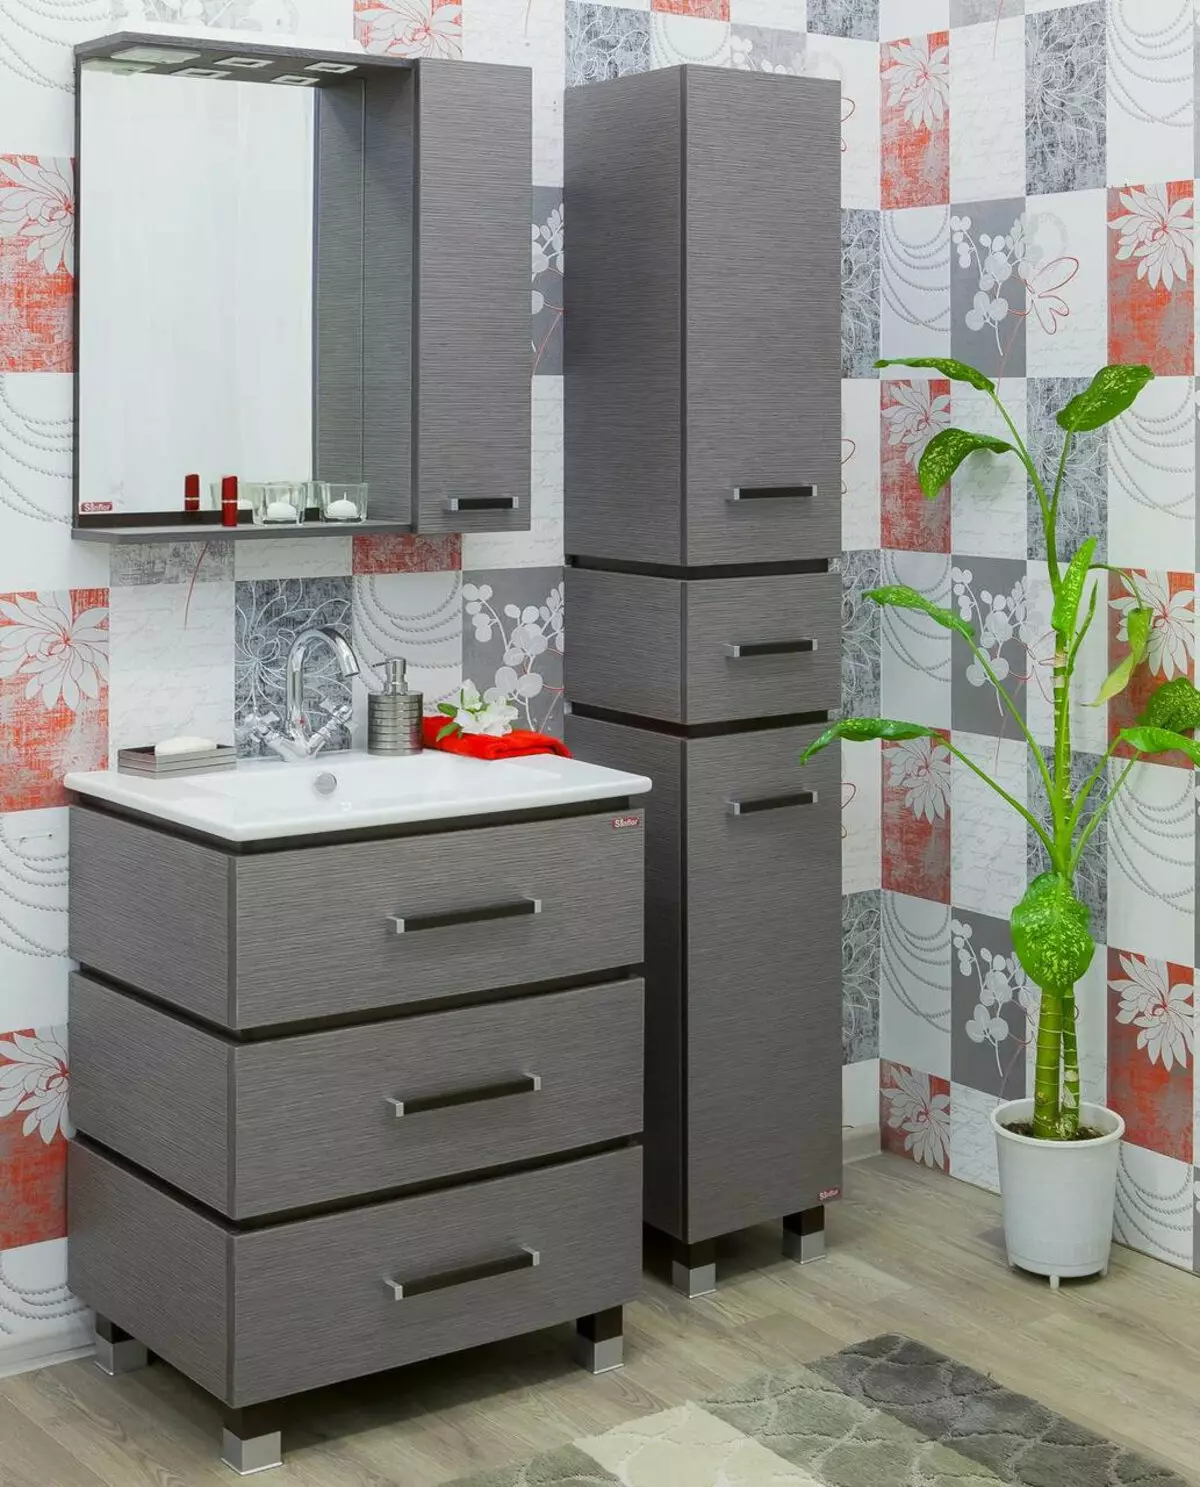 Vloerkaste in die badkamer (67 foto's): Groot laaikas en klein lockers, meubelresensie van Ikea 10412_12